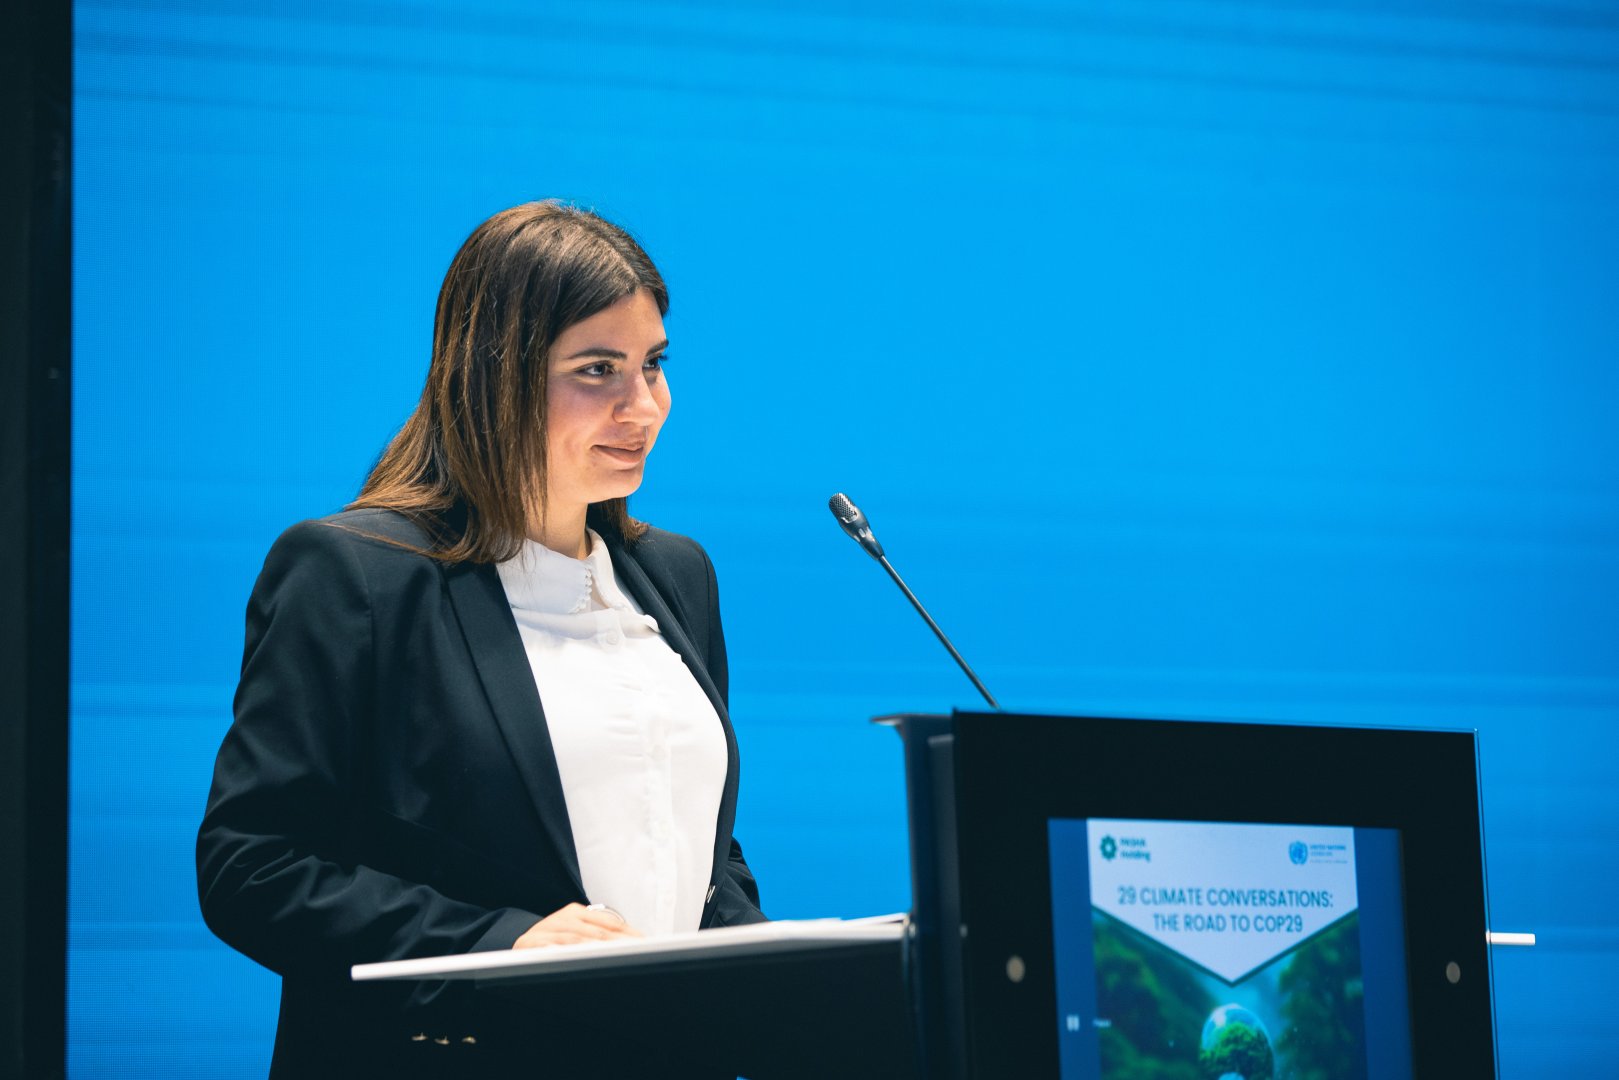 Представительство ООН в Азербайджане и PASHA Holding провели мероприятие в рамках программы "29 бесед о климате: путь к COP29" (ФОТО)